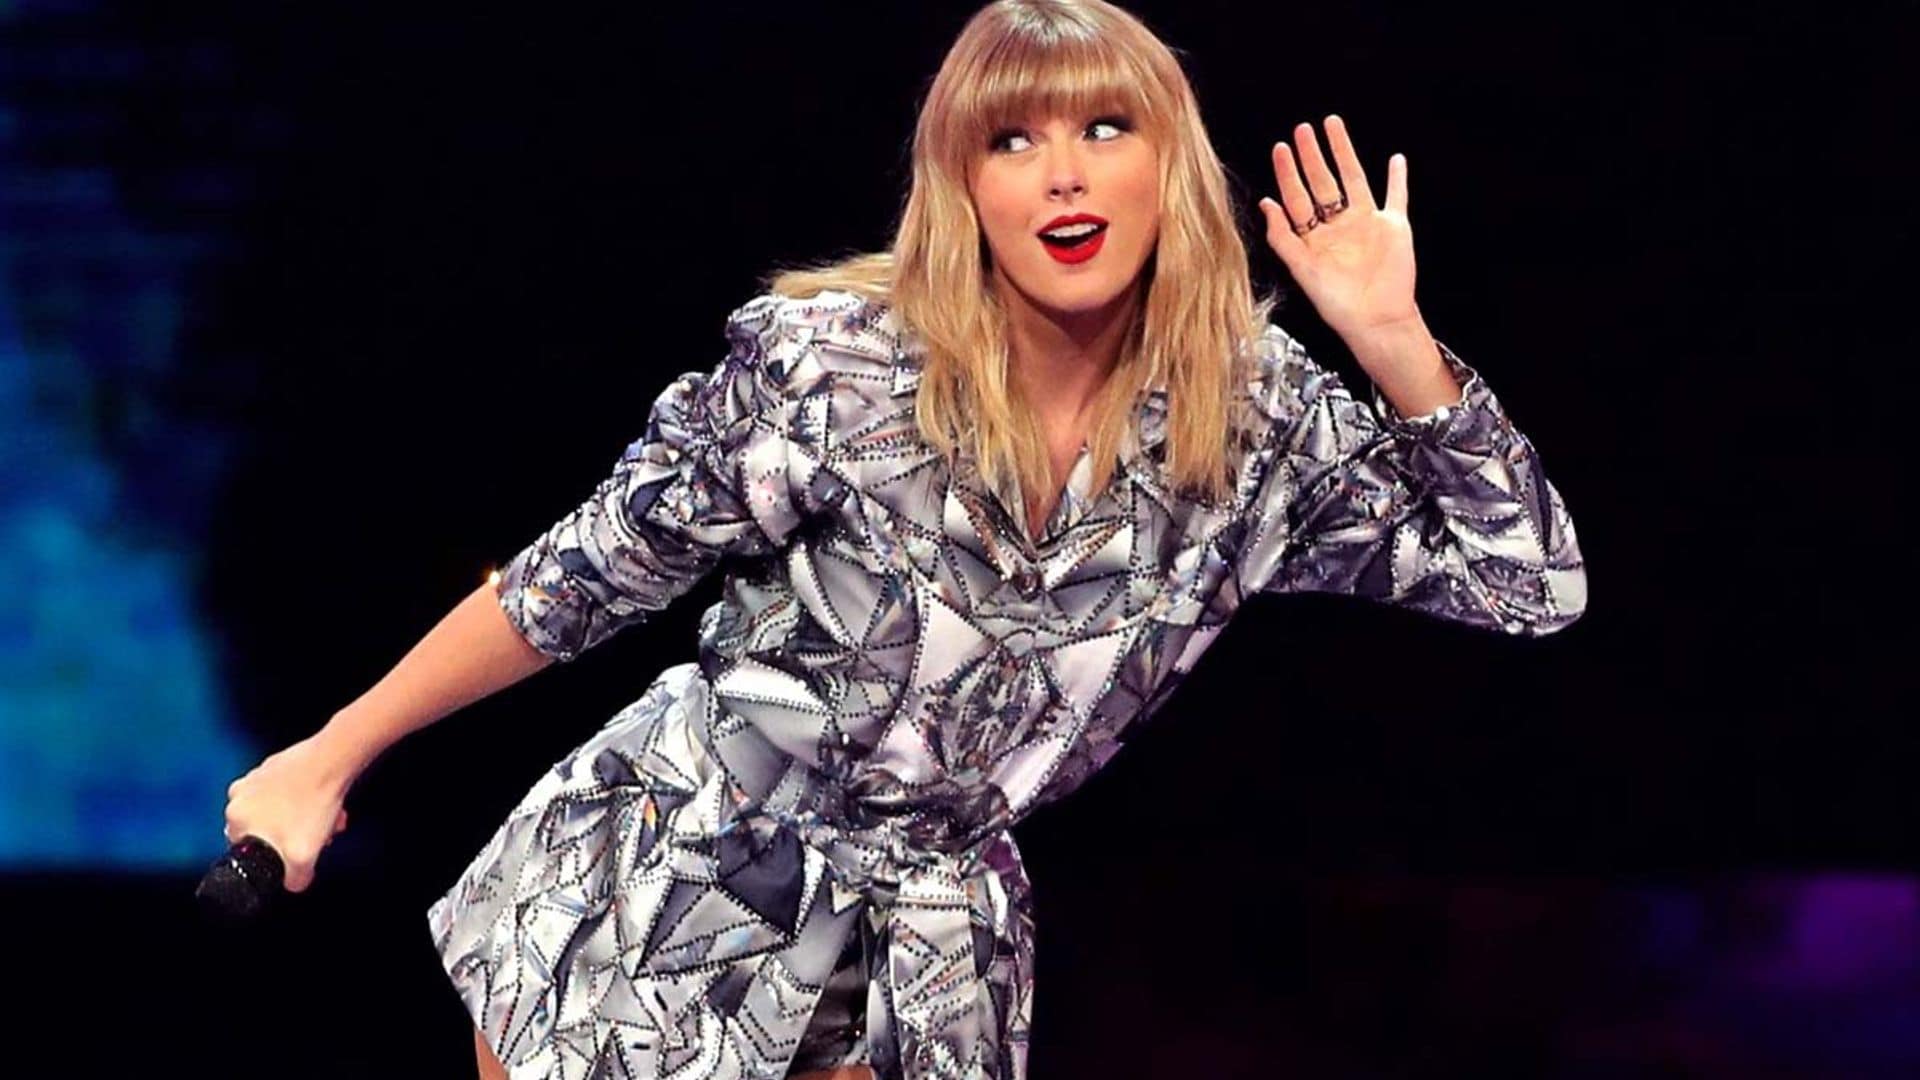 Desciframos los mensajes ocultos del videoclip de Taylor Swift que ha dirigido Blake Lively